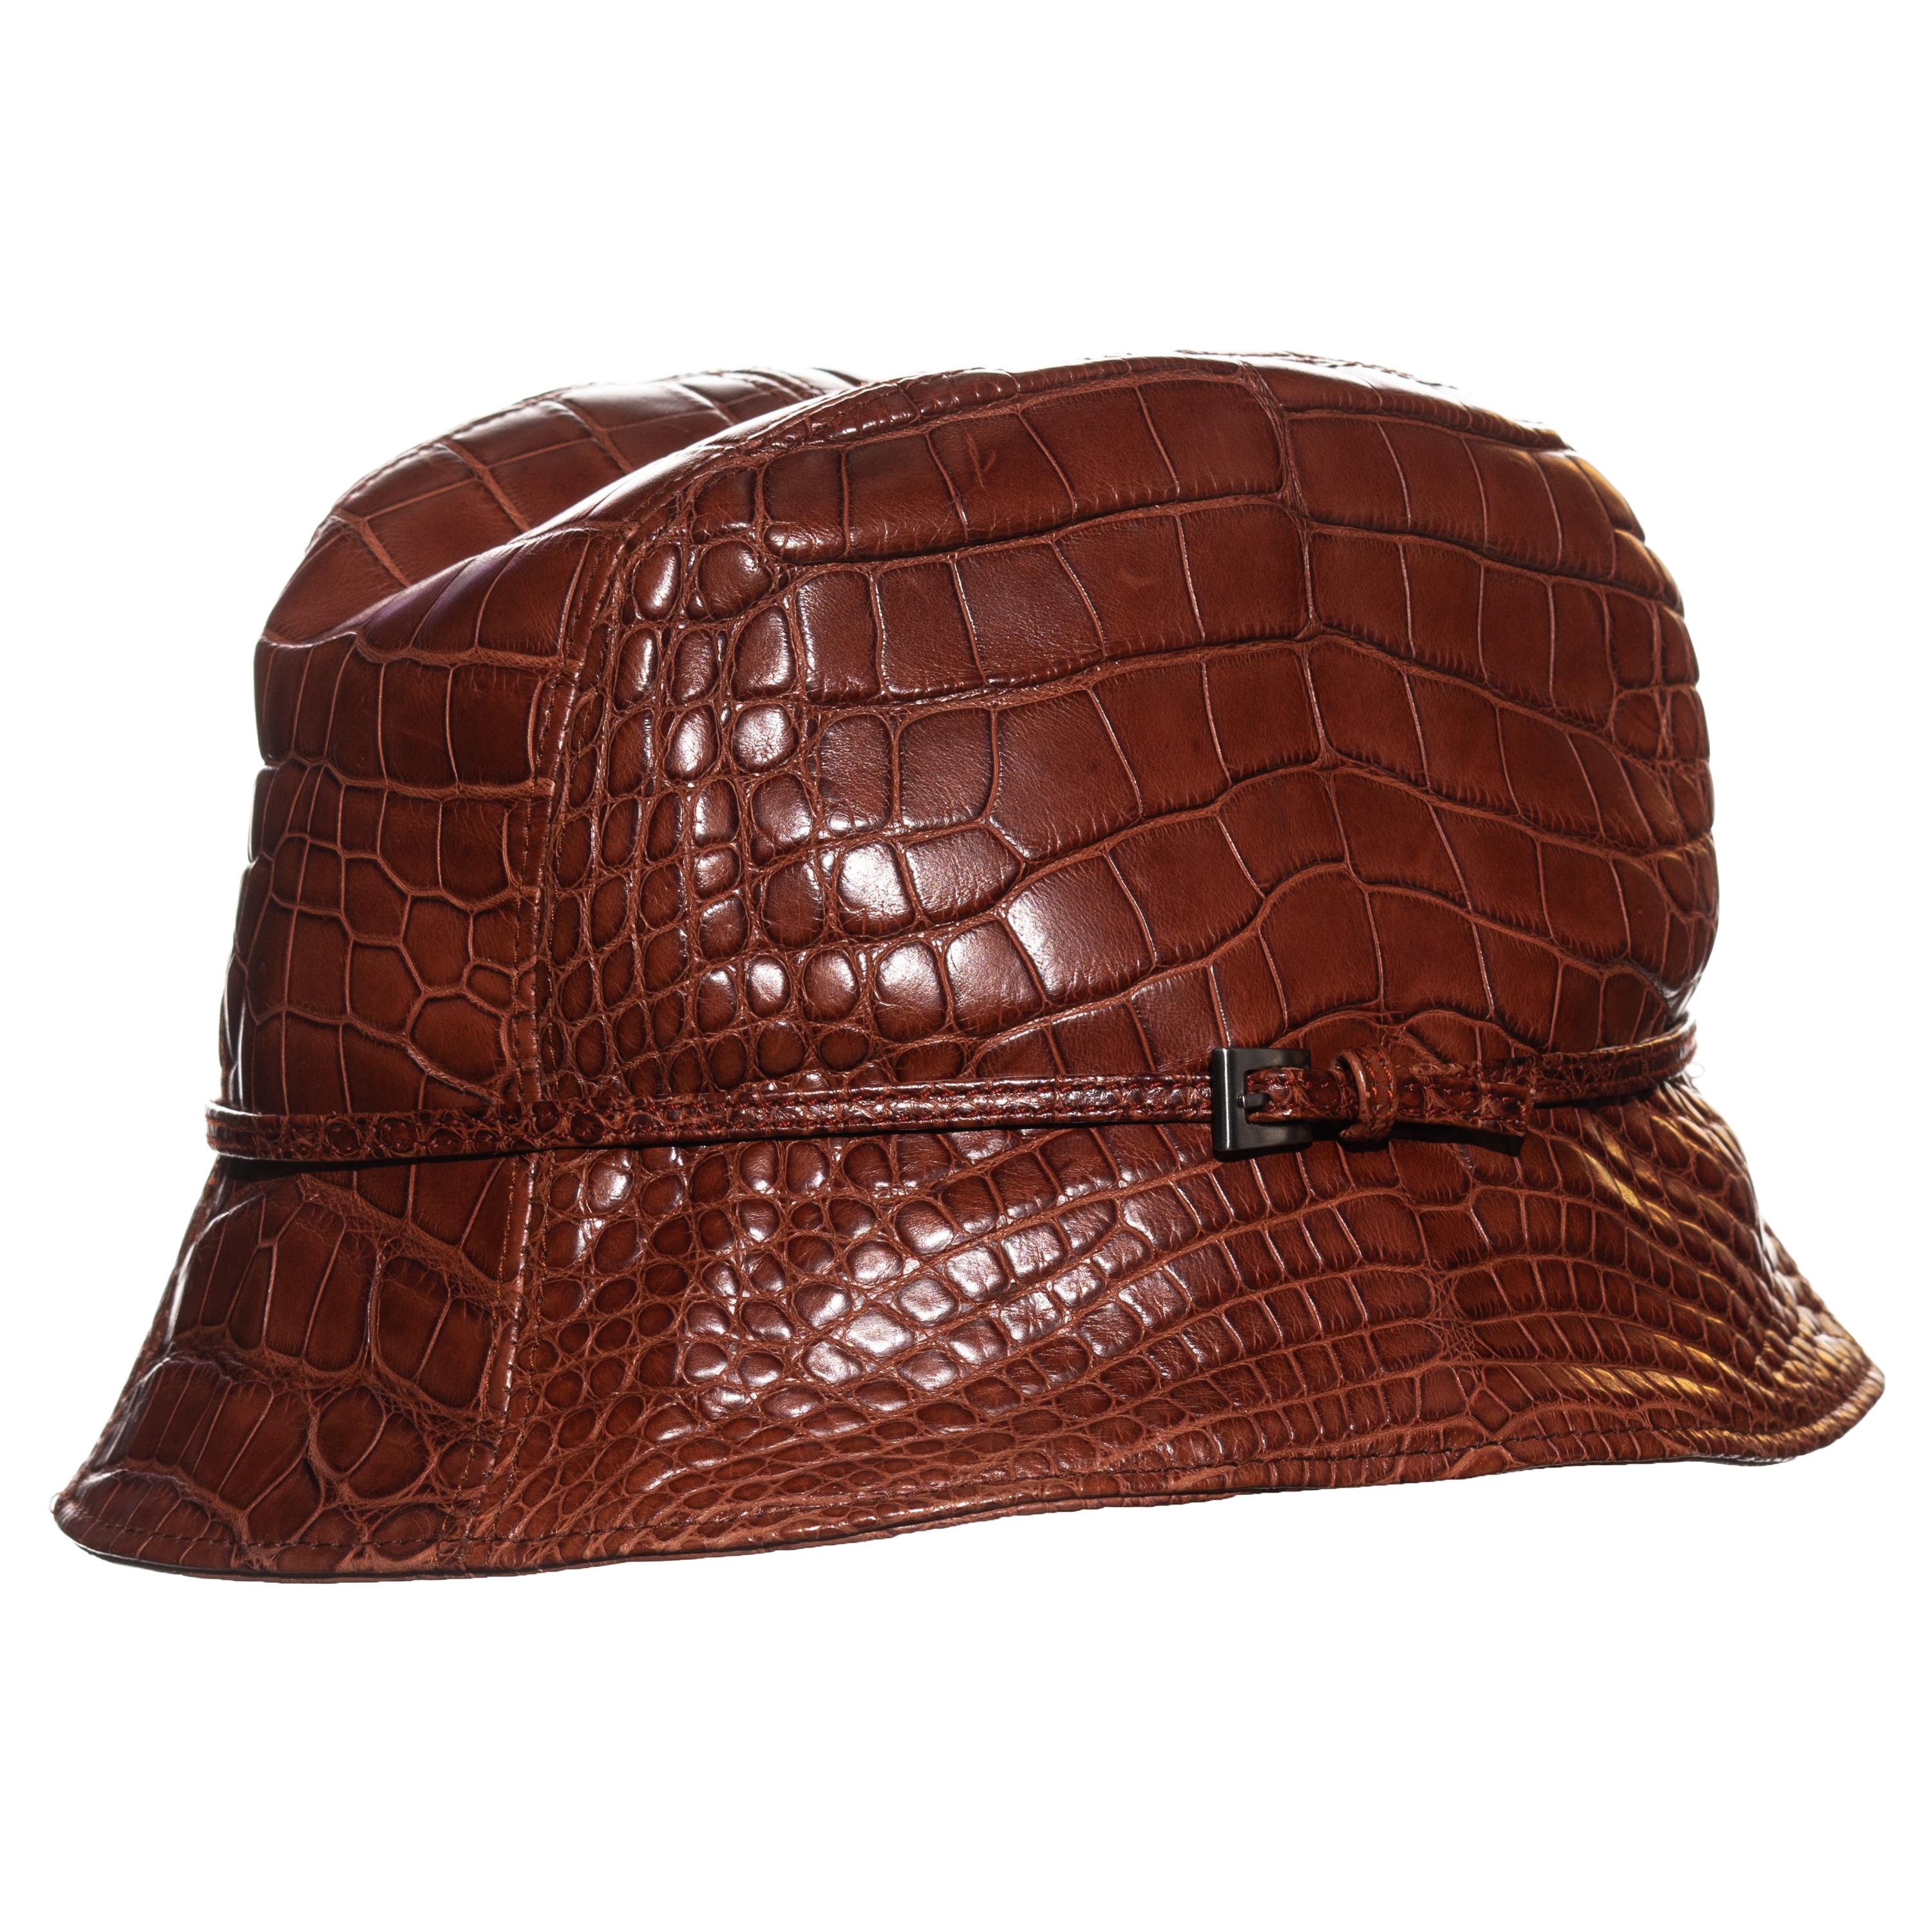 Prada brown alligator bucket hat, fw 2003